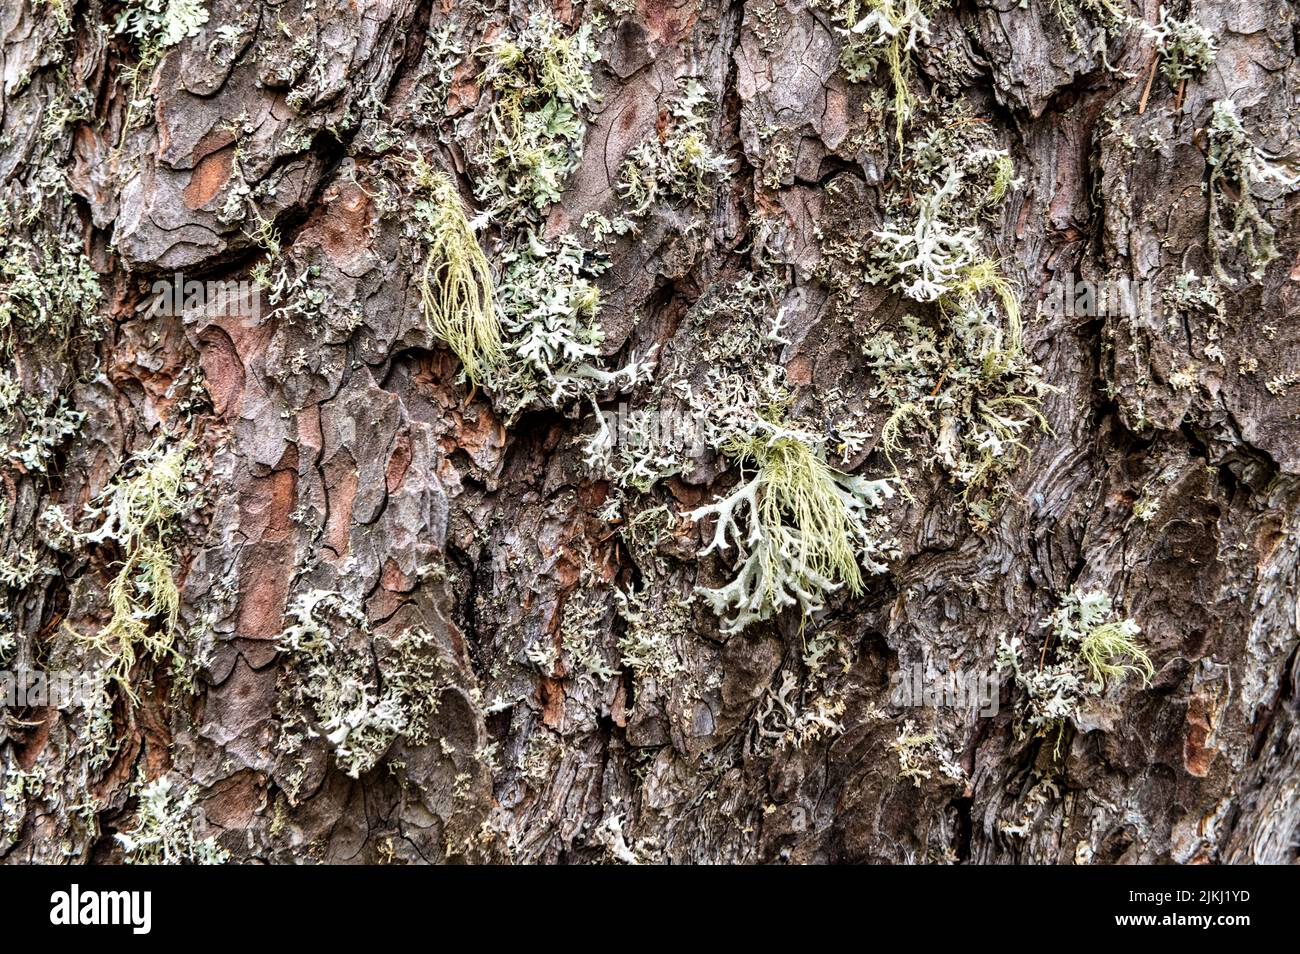 Un albero ricoperto di licheni foliosi e licheni frutticosi shrubby. Parmotrema perlatum sulla metà superiore del tronco Foto Stock